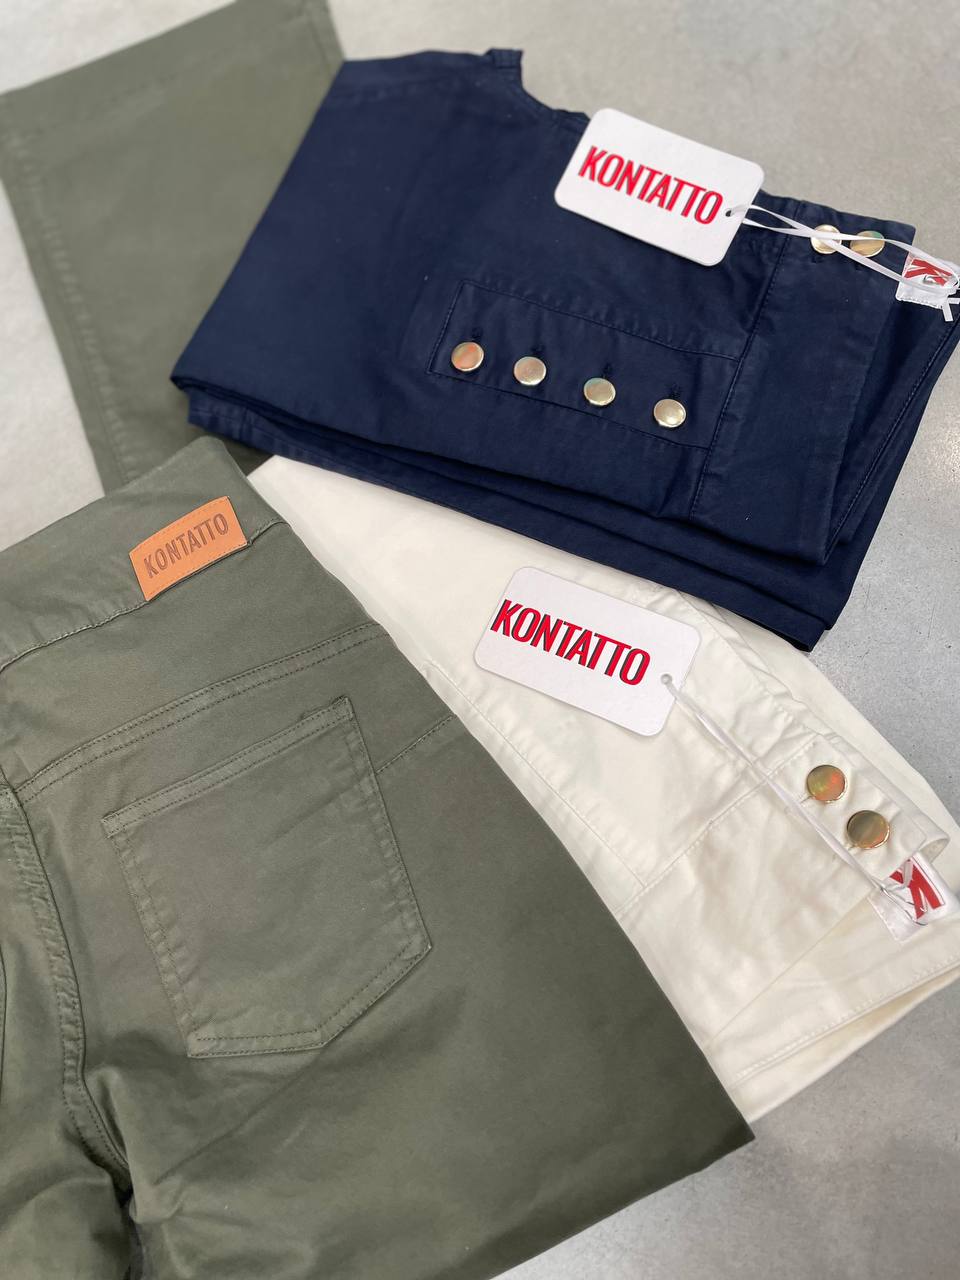 Итальянская одежда, бренд Kontatto, арт. 73272290